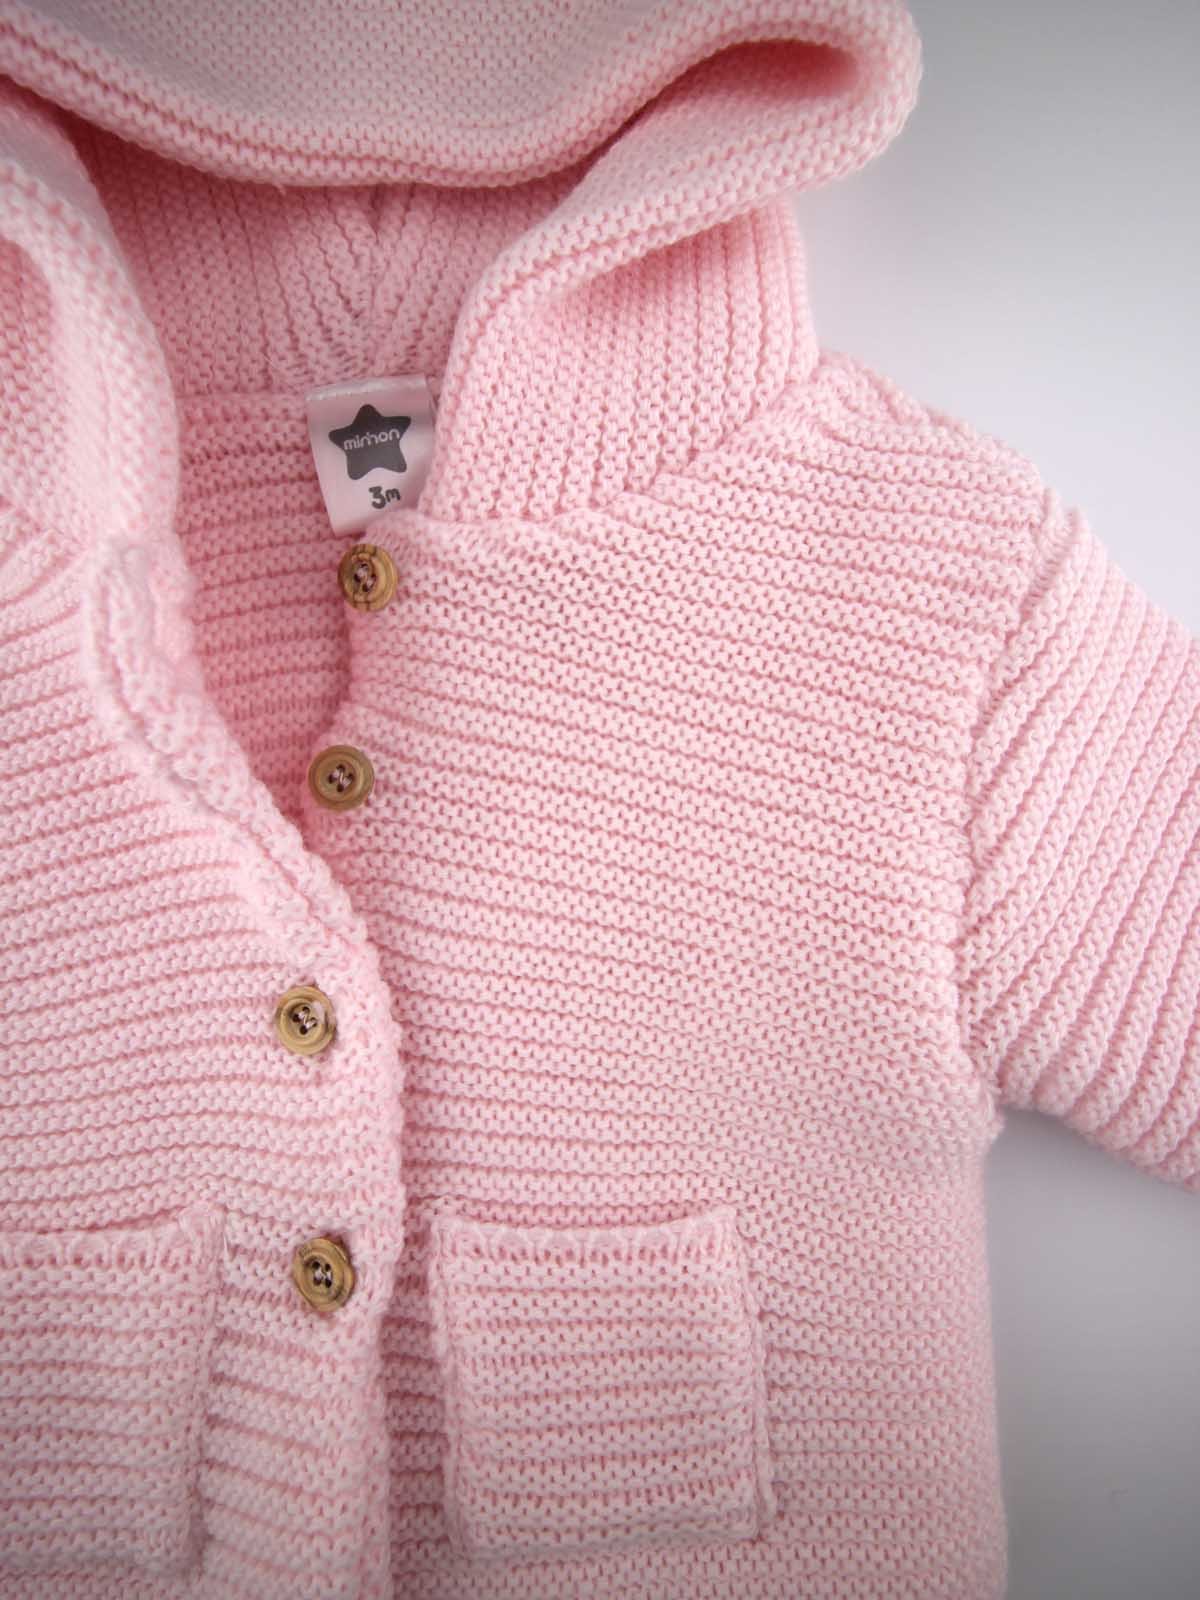 casaco de bebe menina